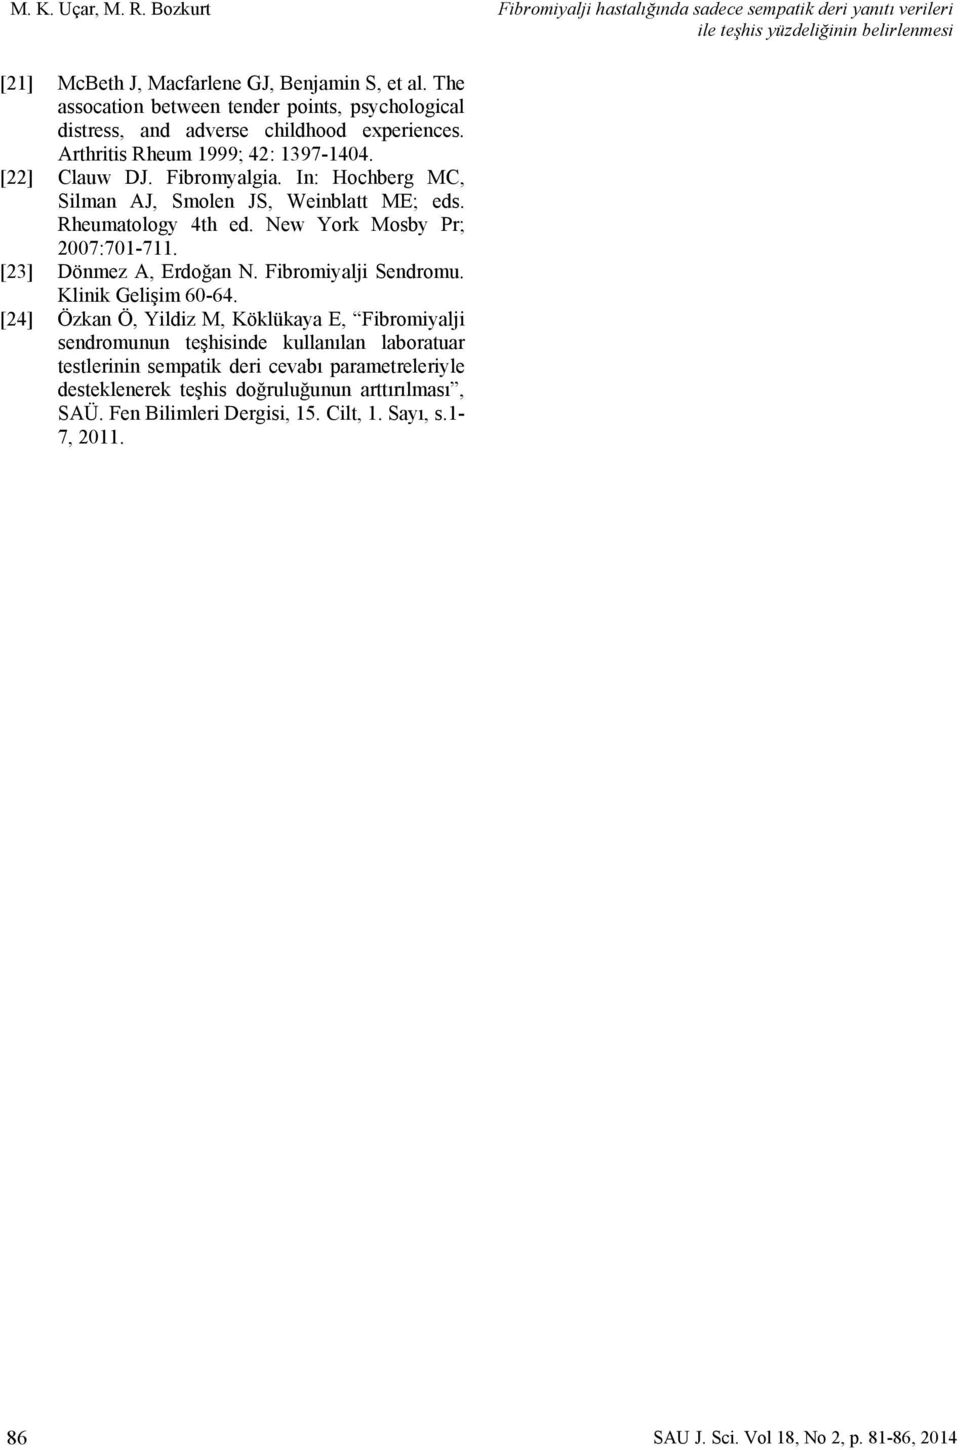 In: Hochberg MC, Silman AJ, Smolen JS, Weinblatt ME; eds. Rheumatology 4th ed. New York Mosby Pr; 2007:701-711. [23] Dönmez A, Erdoğan N. Fibromiyalji Sendromu. Klinik Gelişim 60-64.